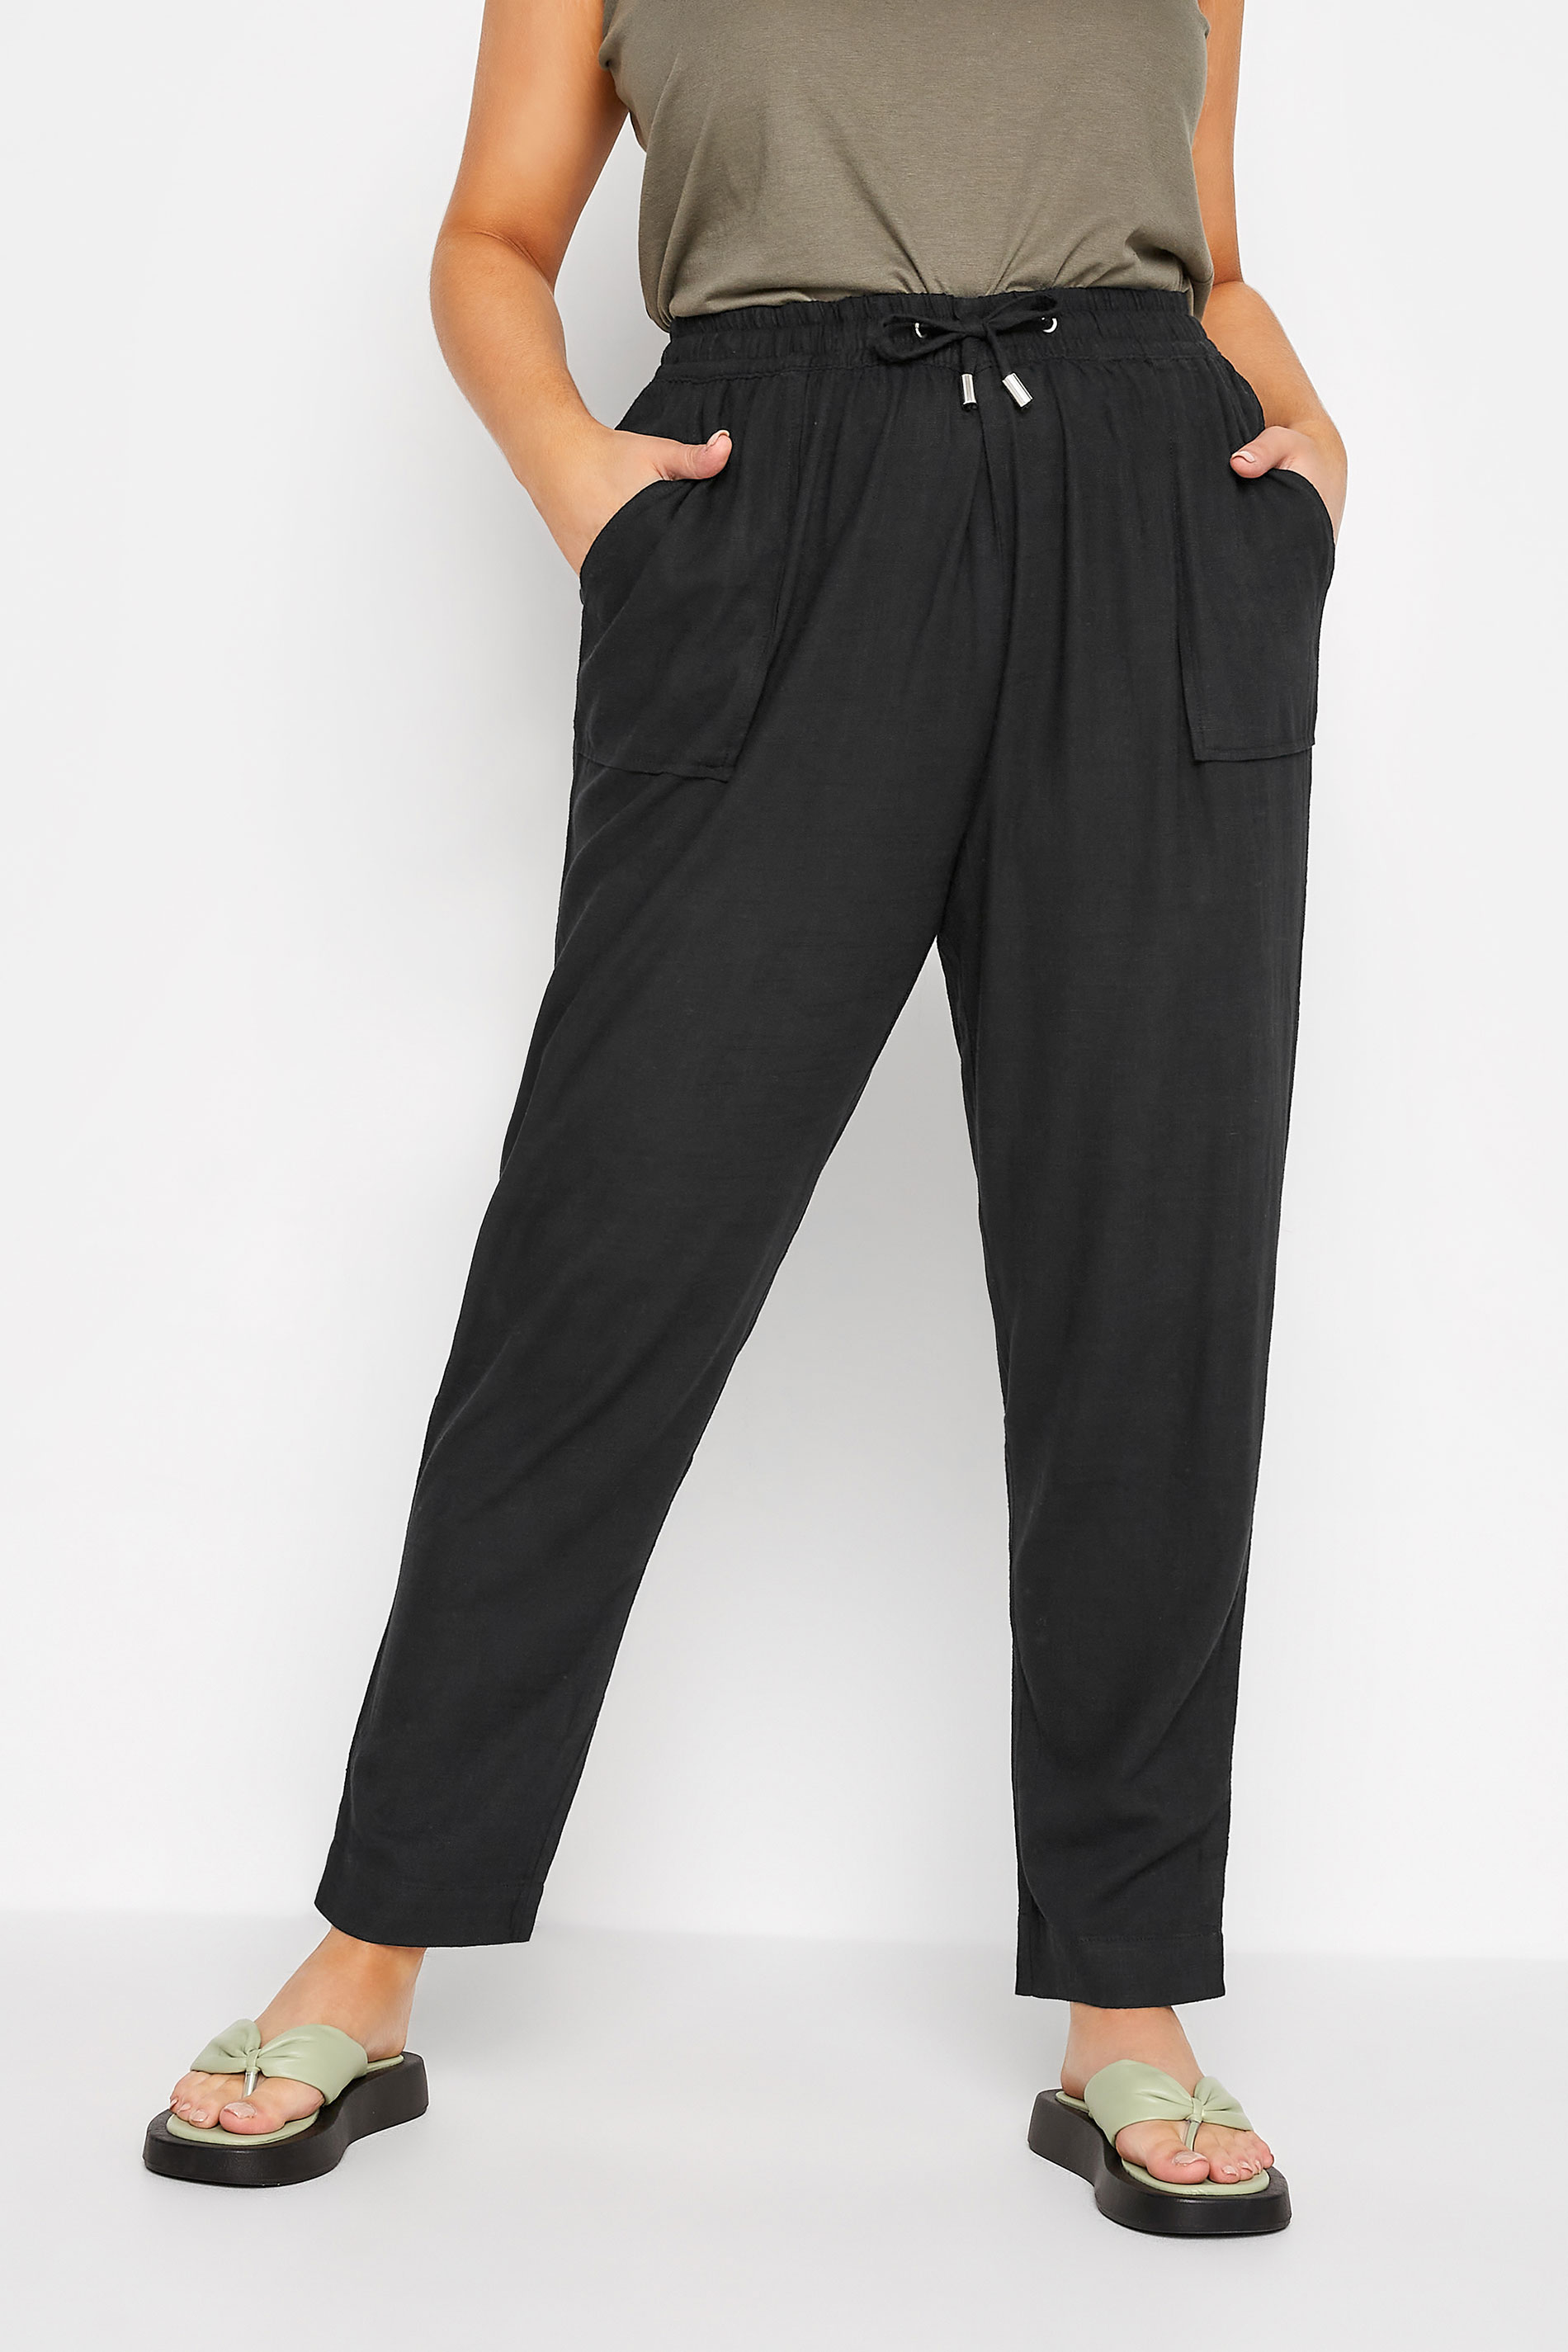 Plus Size Black Linen Blend Joggers | Yours Clothing  1